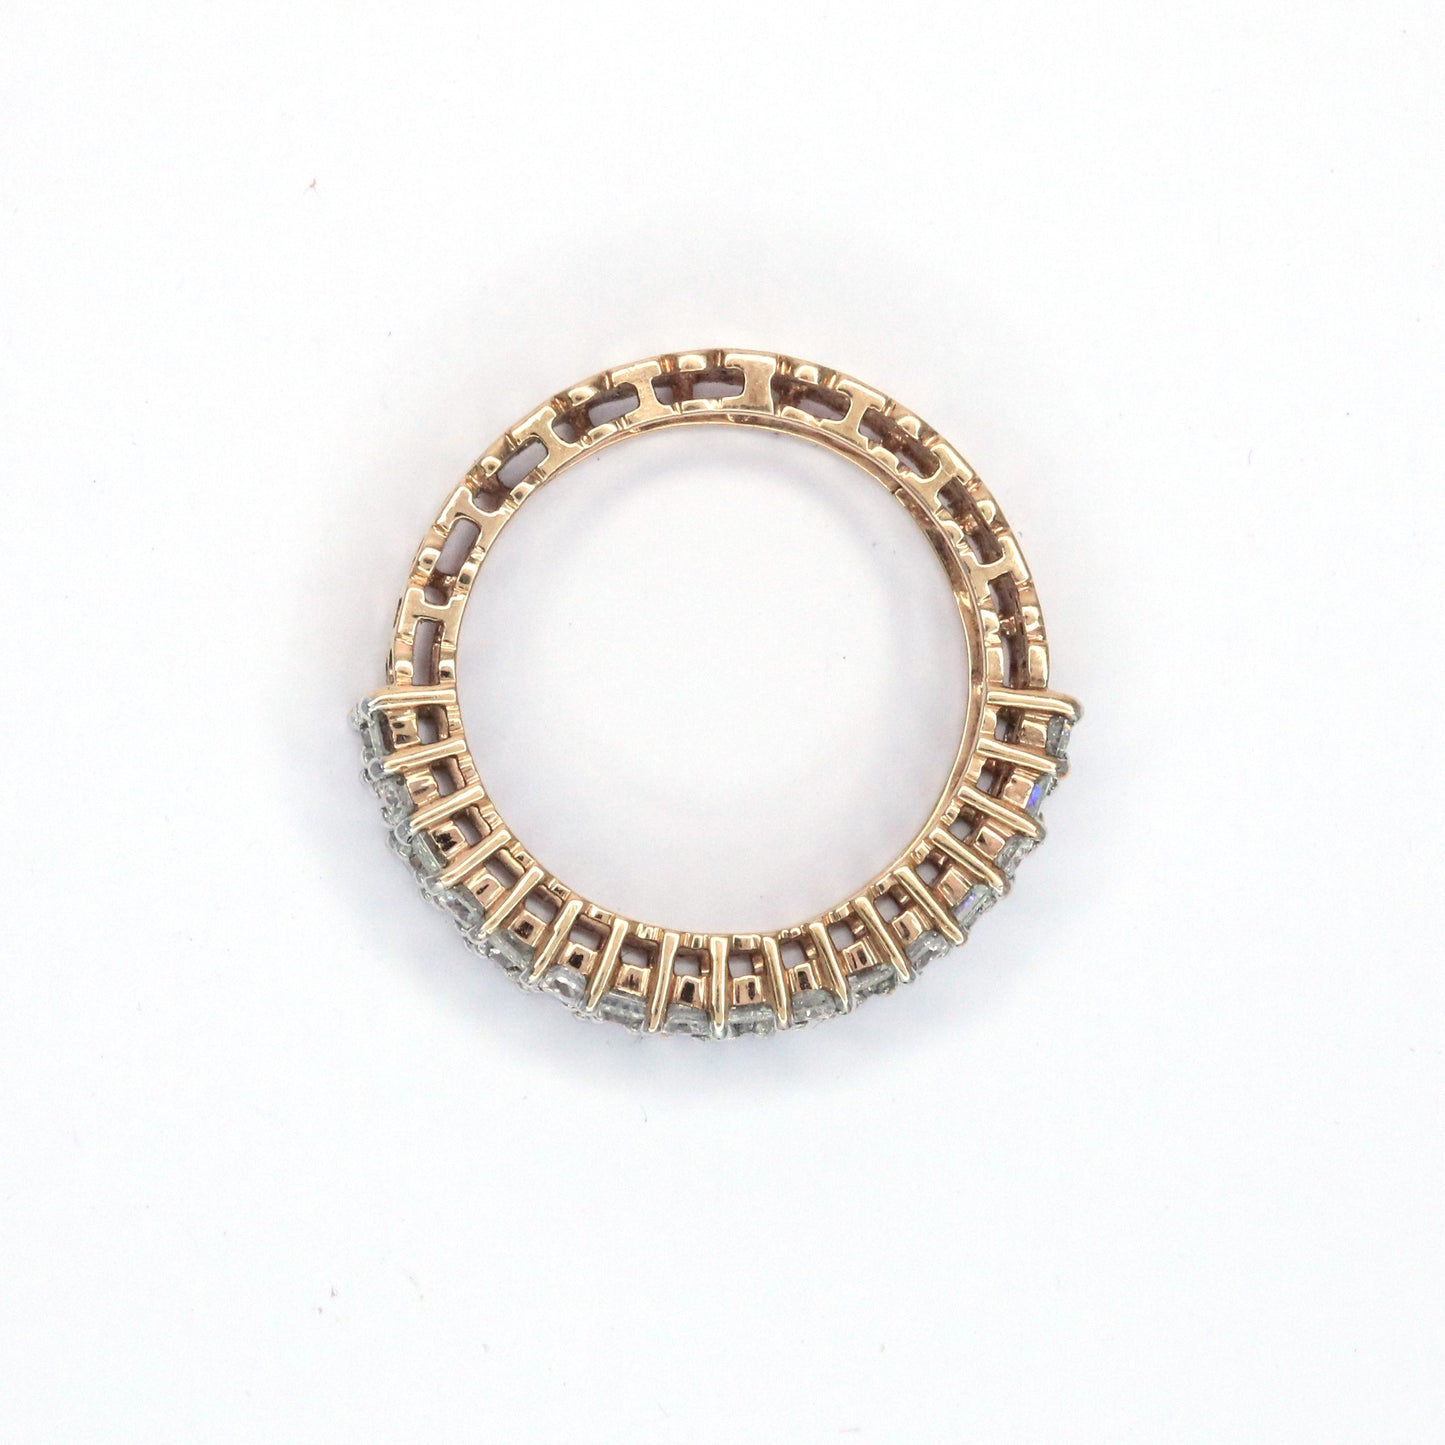 Hazel unique ring design